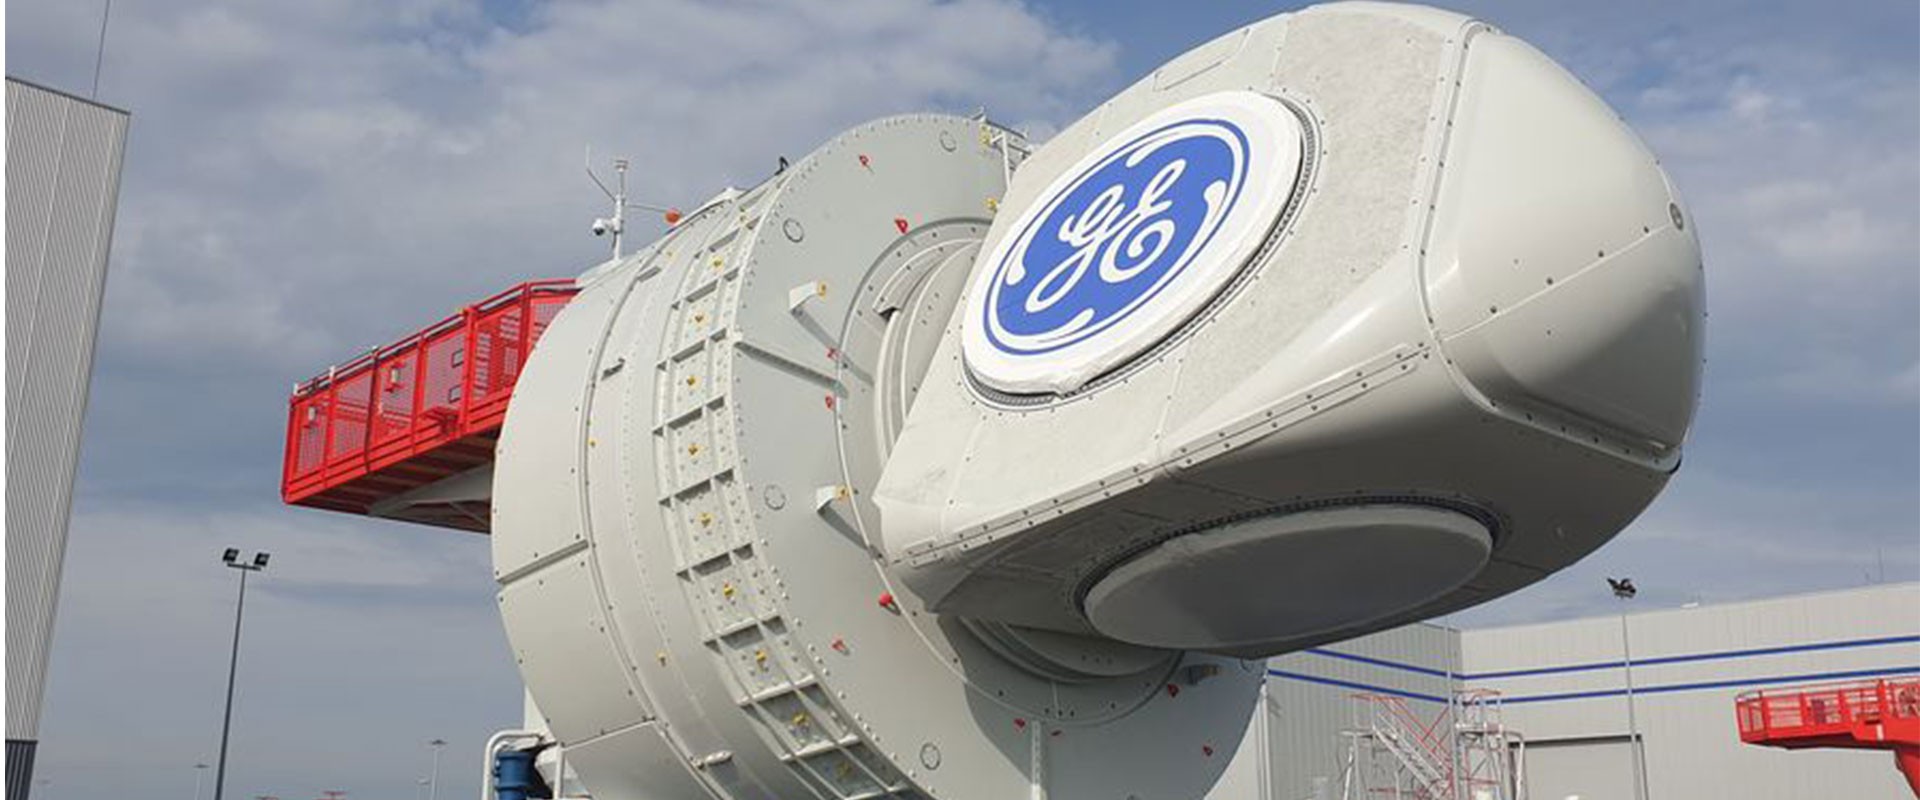 Première nacelle GE pour le parc éolien du Banc de Guérande